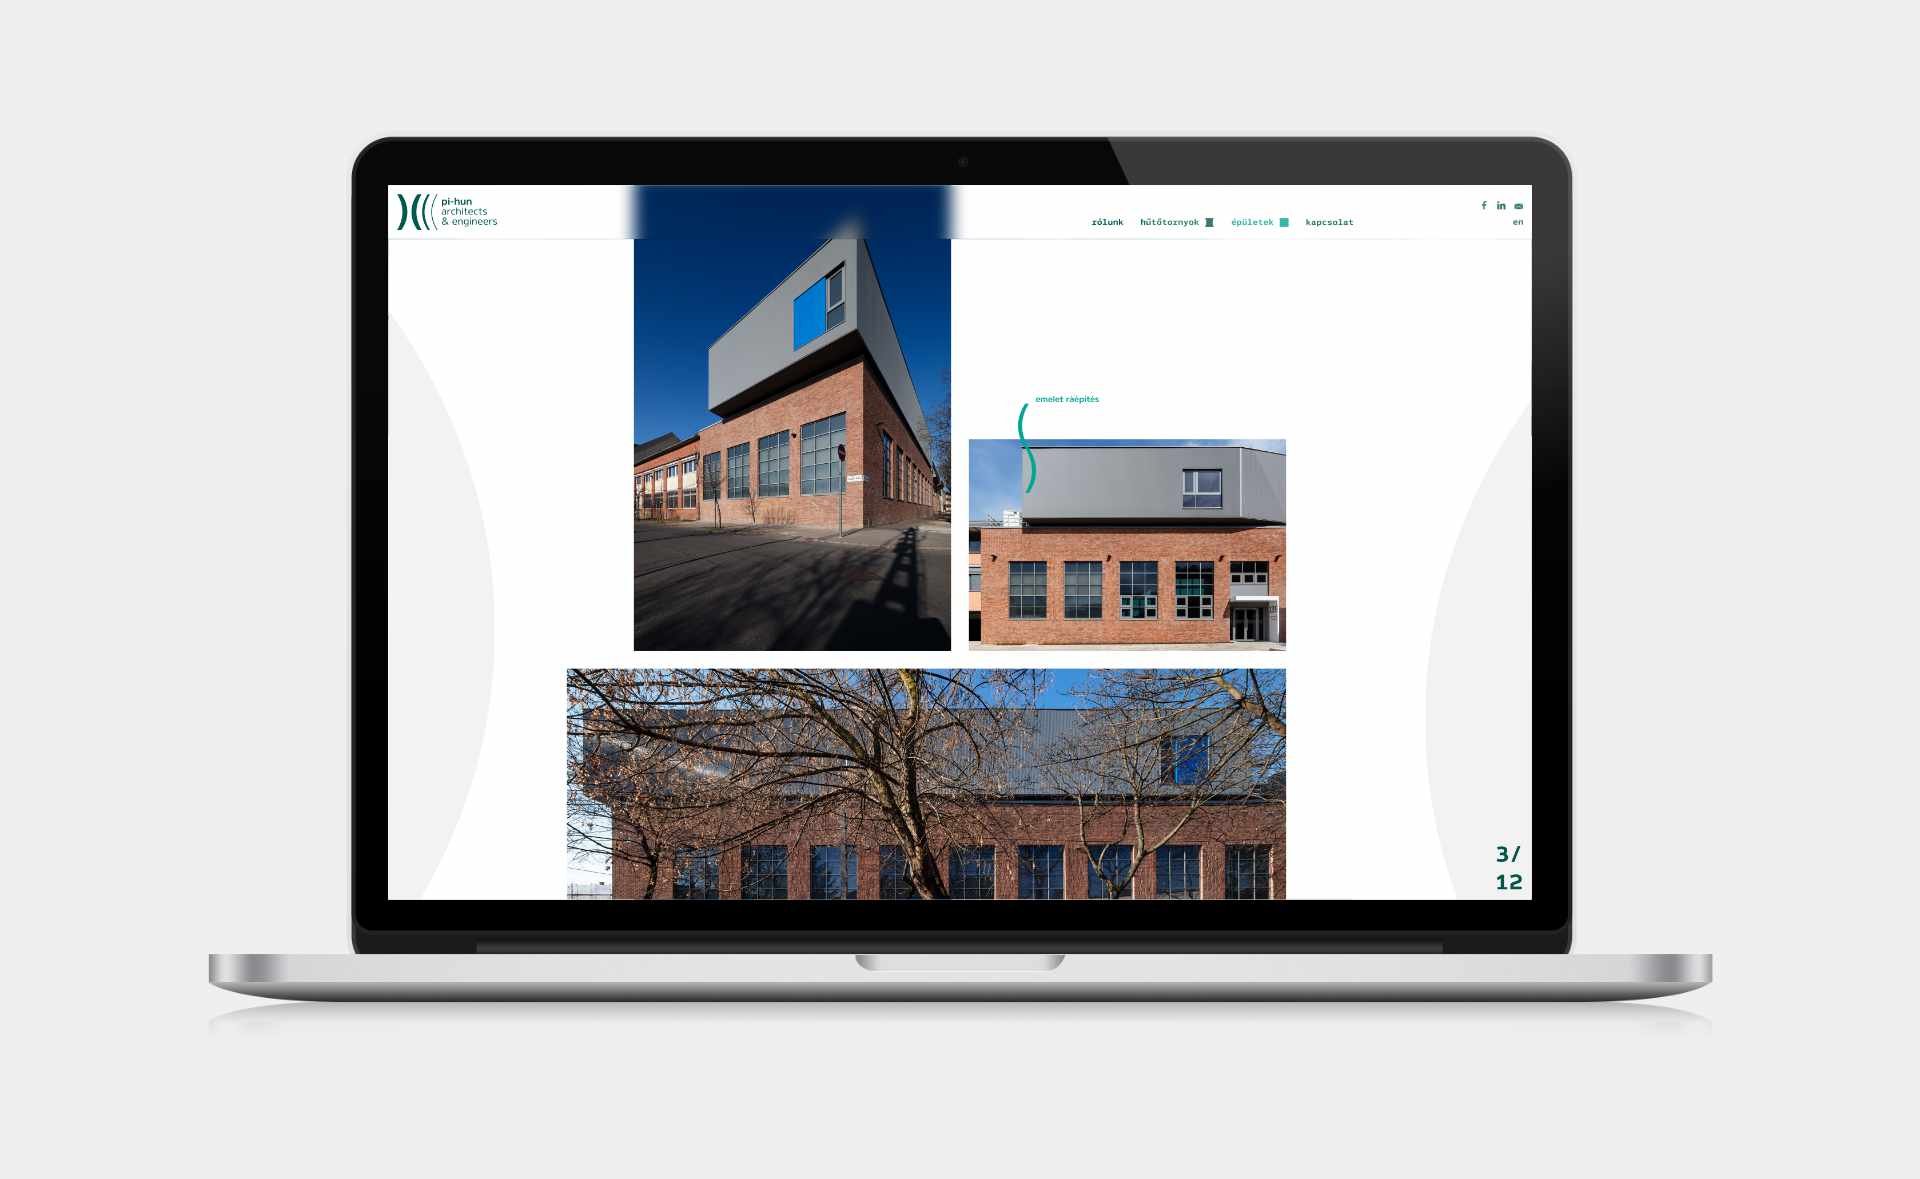 PI-HUN website UI design and development desktop single building